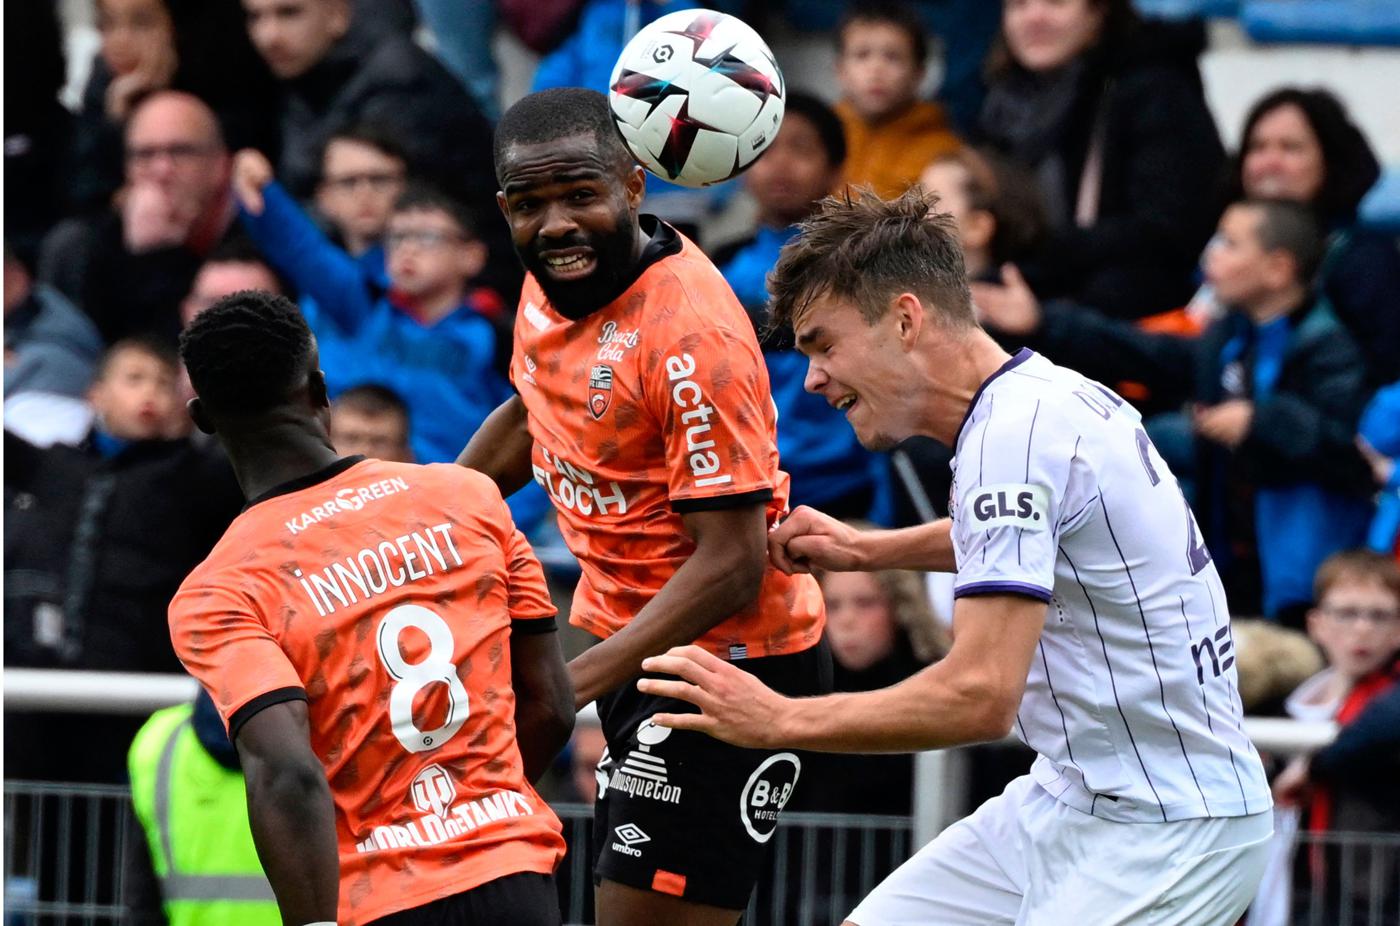 Lorient - Toulouse - 0-1. Mistrzostwa Francji, runda 32. Przegląd meczu, statystyki